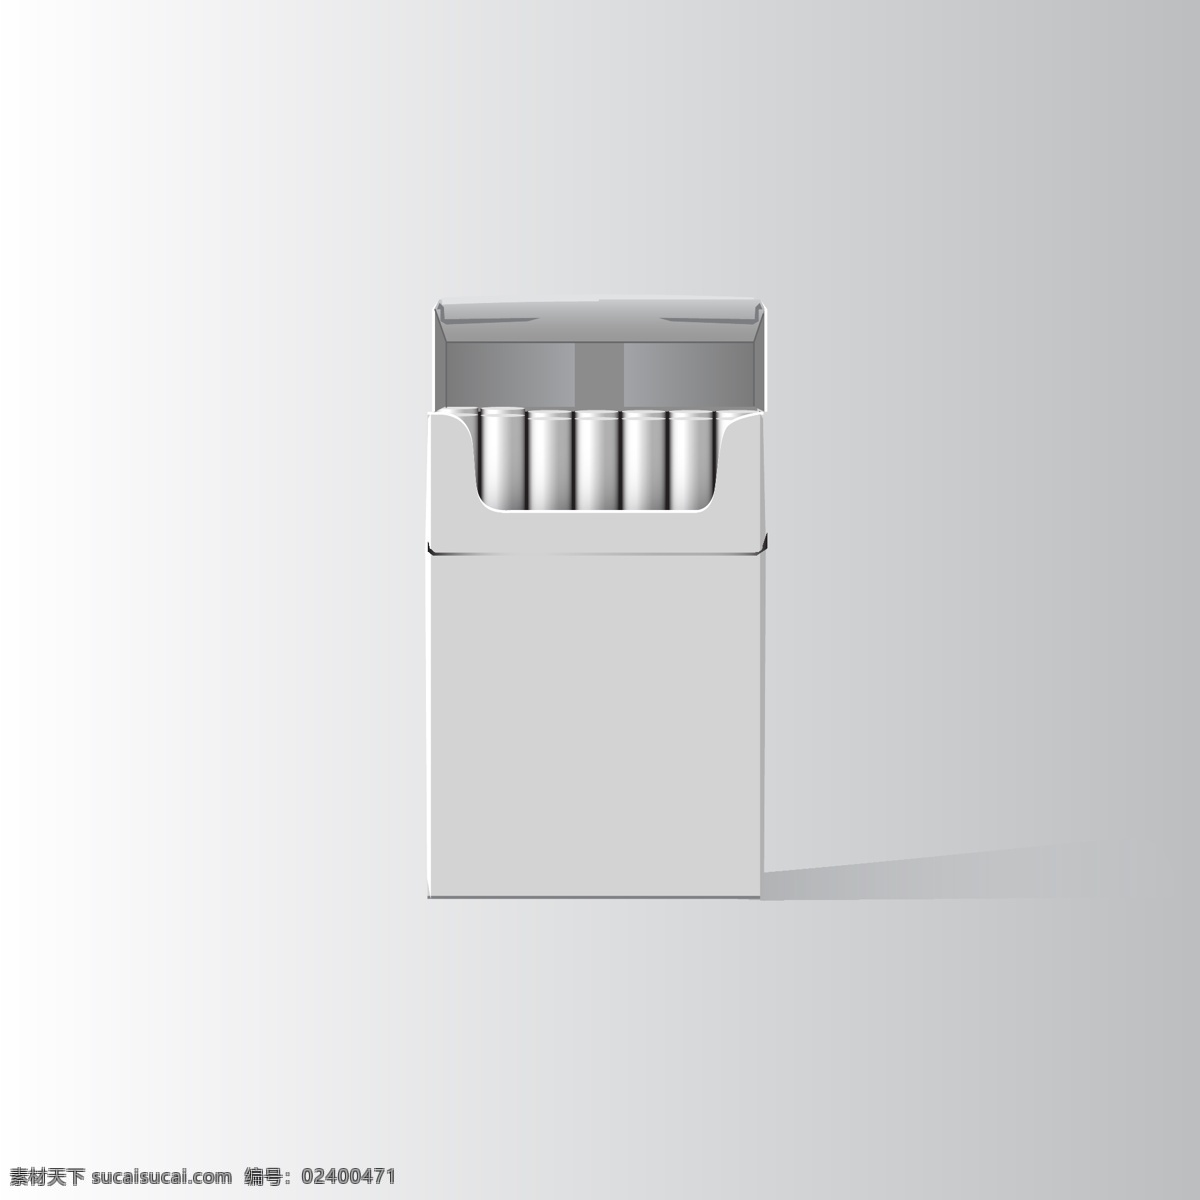 烟盒 香烟 烟 禁止吸烟 矢量素材 手绘 创意广告 no smoking 标识标志图标 公共标识 矢量